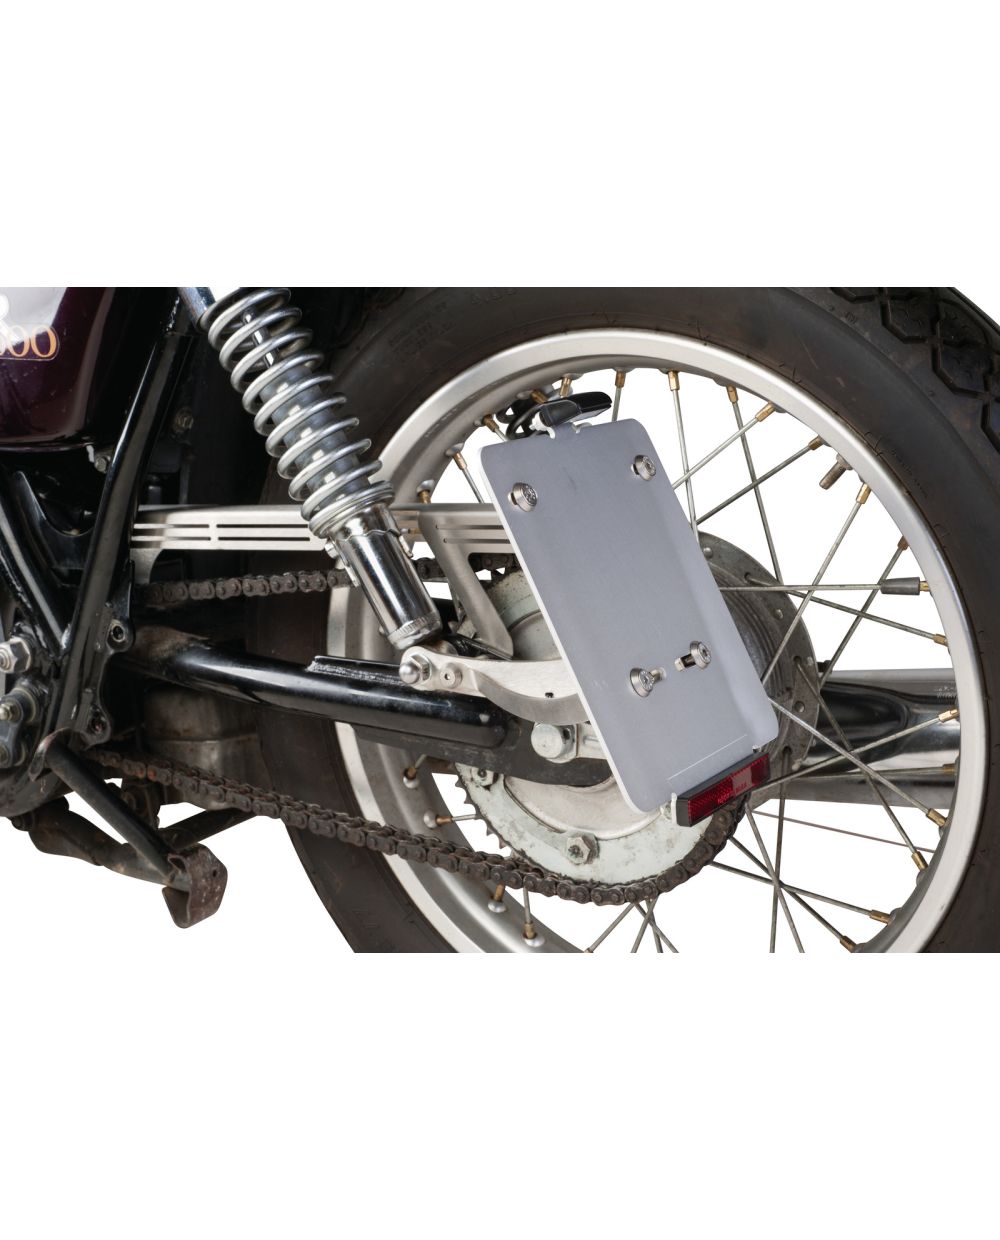 Motorrad hinten Kotflügel Kennzeichen Halterung Halter mit 12V Led